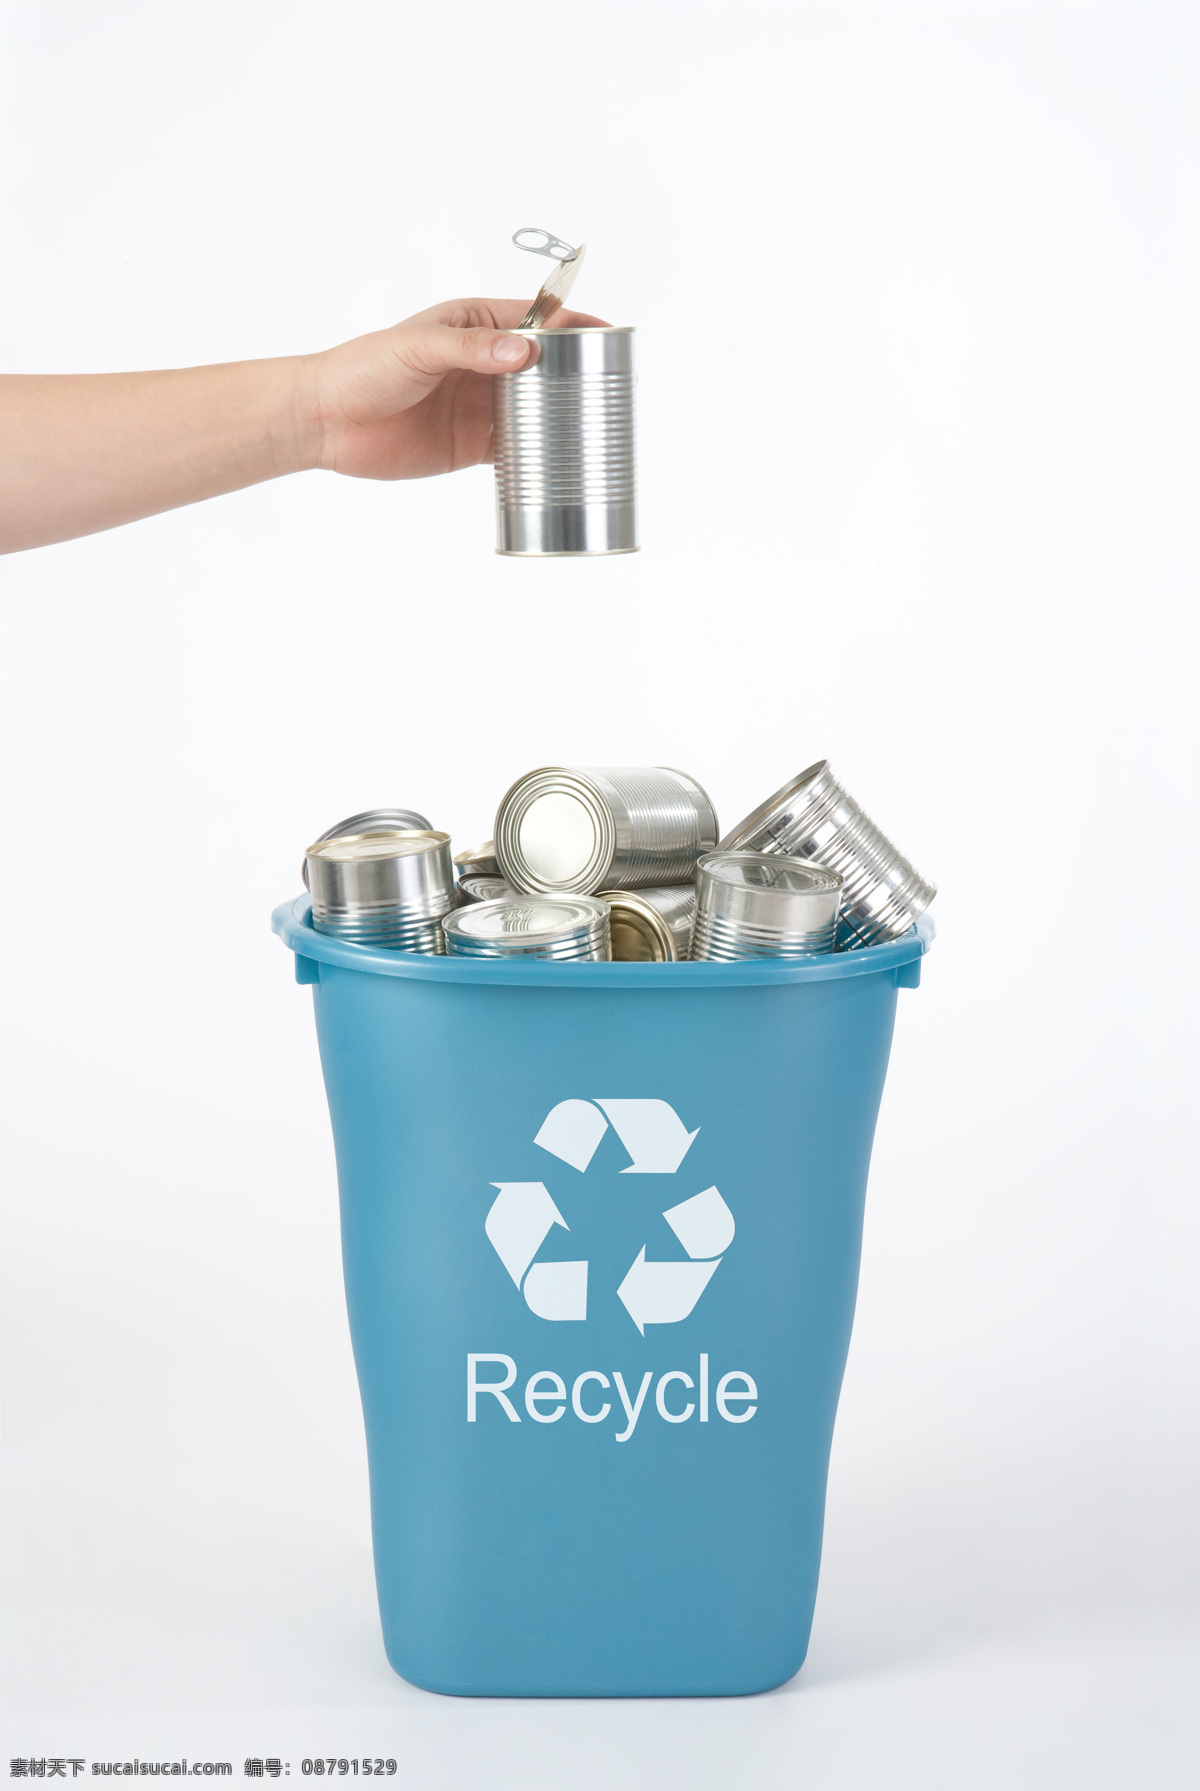 扔 垃圾桶 里 罐子 环保 环境保护 保护地球 绿色环保 罐头 回收利用 油漆桶 环保宣传 创意 抽象 特写 高清图片 人体器官图 人物图片